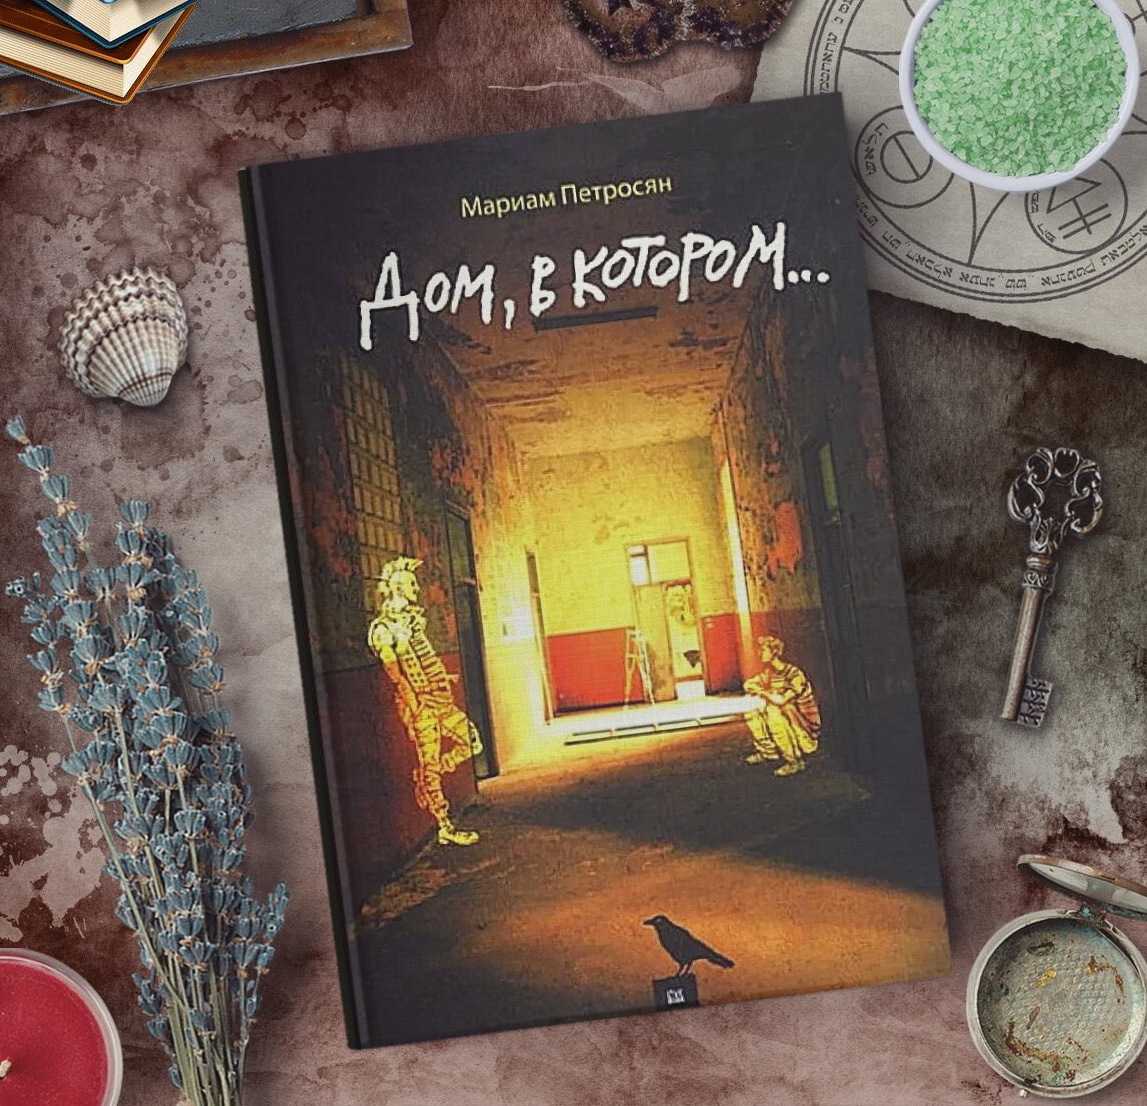 Исследуем смысл книги «дом в котором…» мариам петросян: загадочное прозрение или глубокая философская мысль?